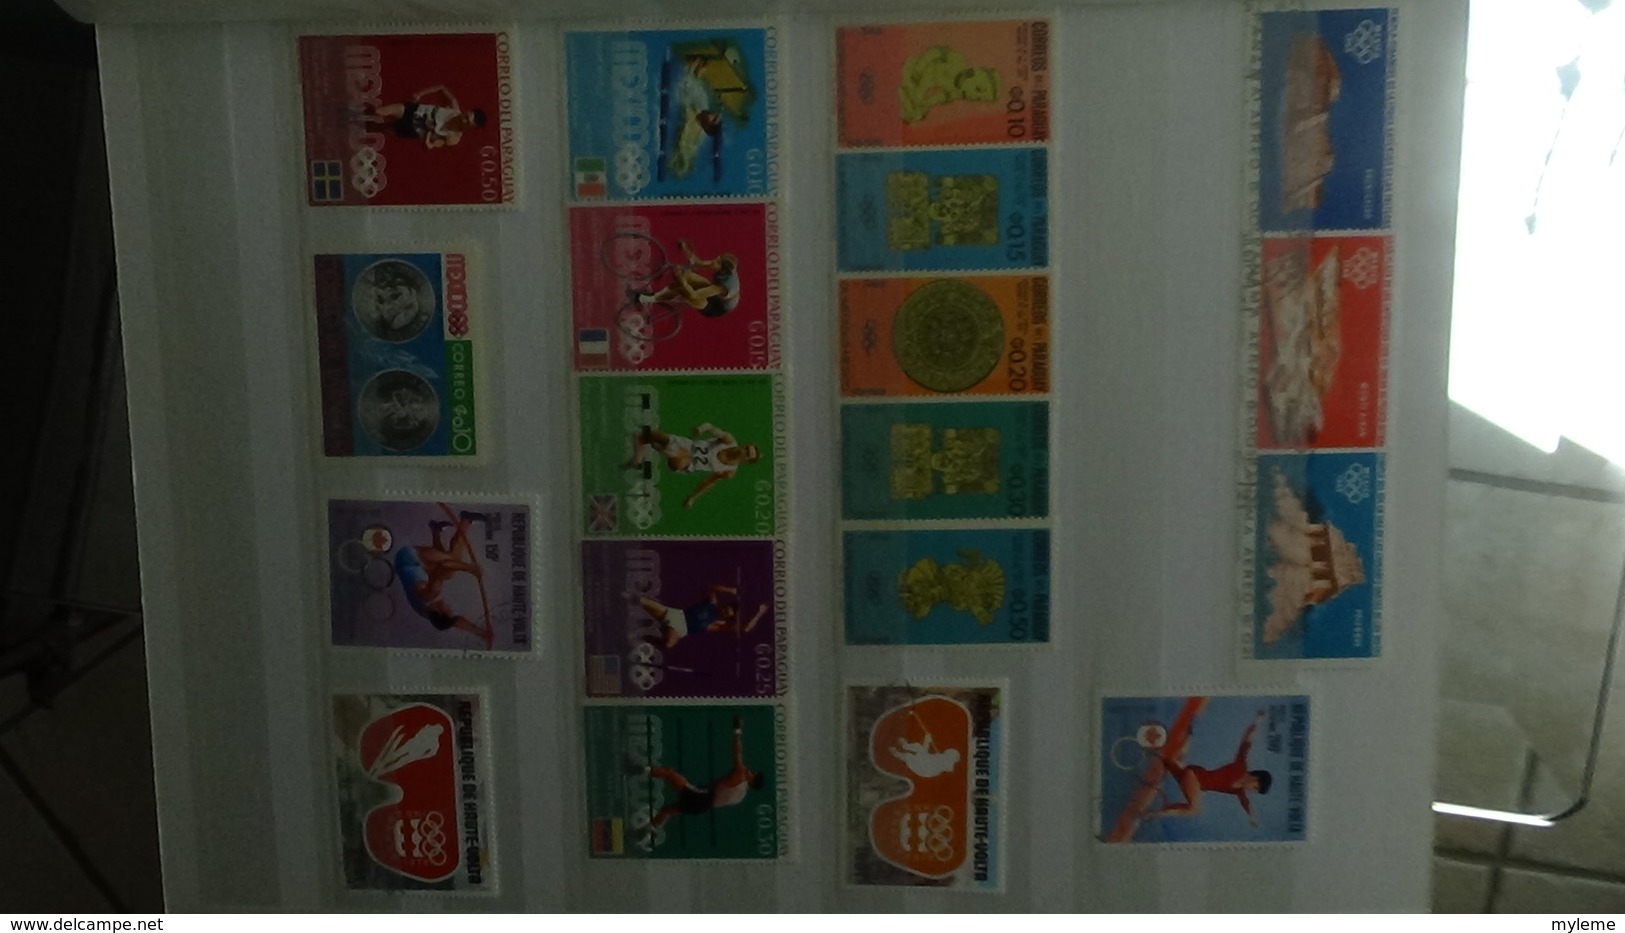 Gros album de thématiques Jeux Olympiques en timbres et blocs tous pays